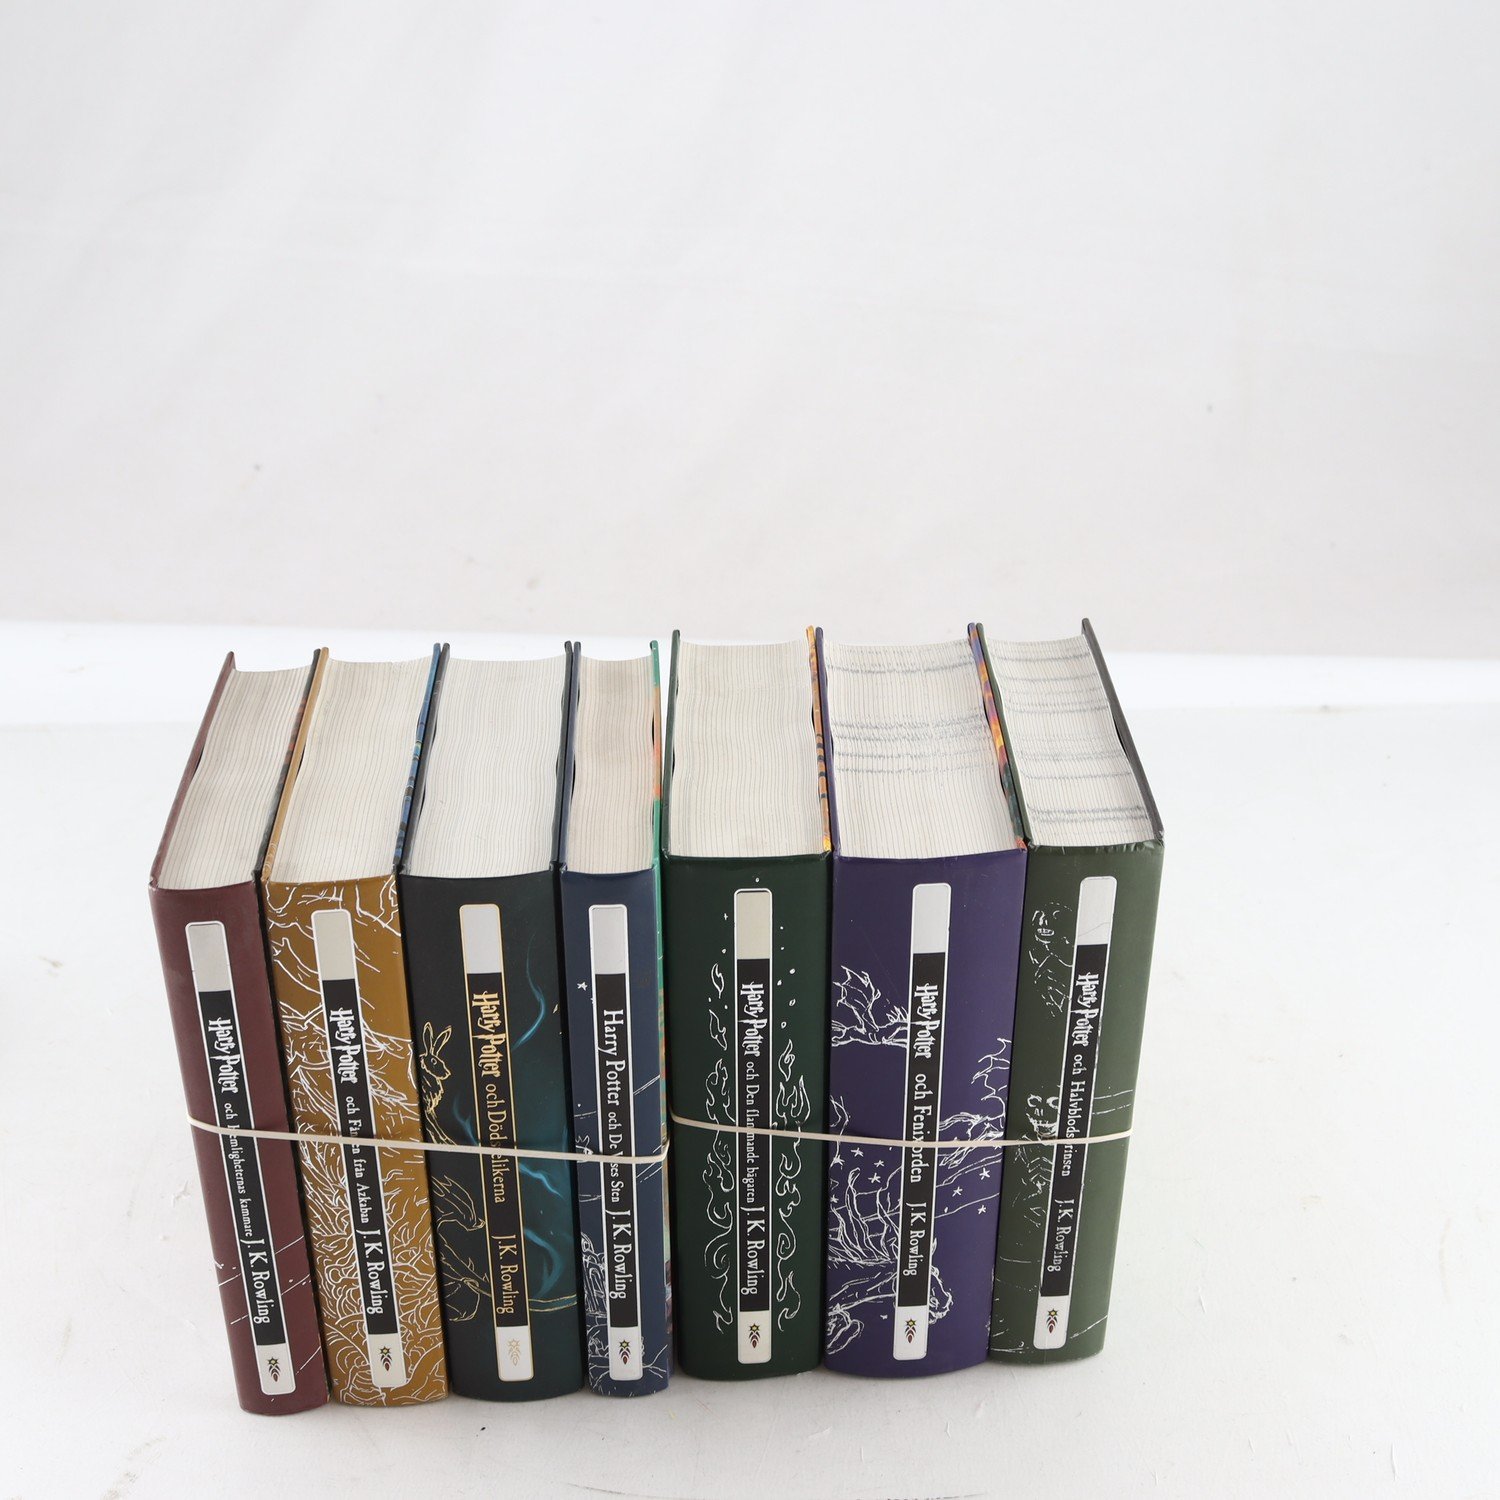 J. K. Rowling, Harry Potter, komplett serie med 7 volymer. Samfraktas ej.